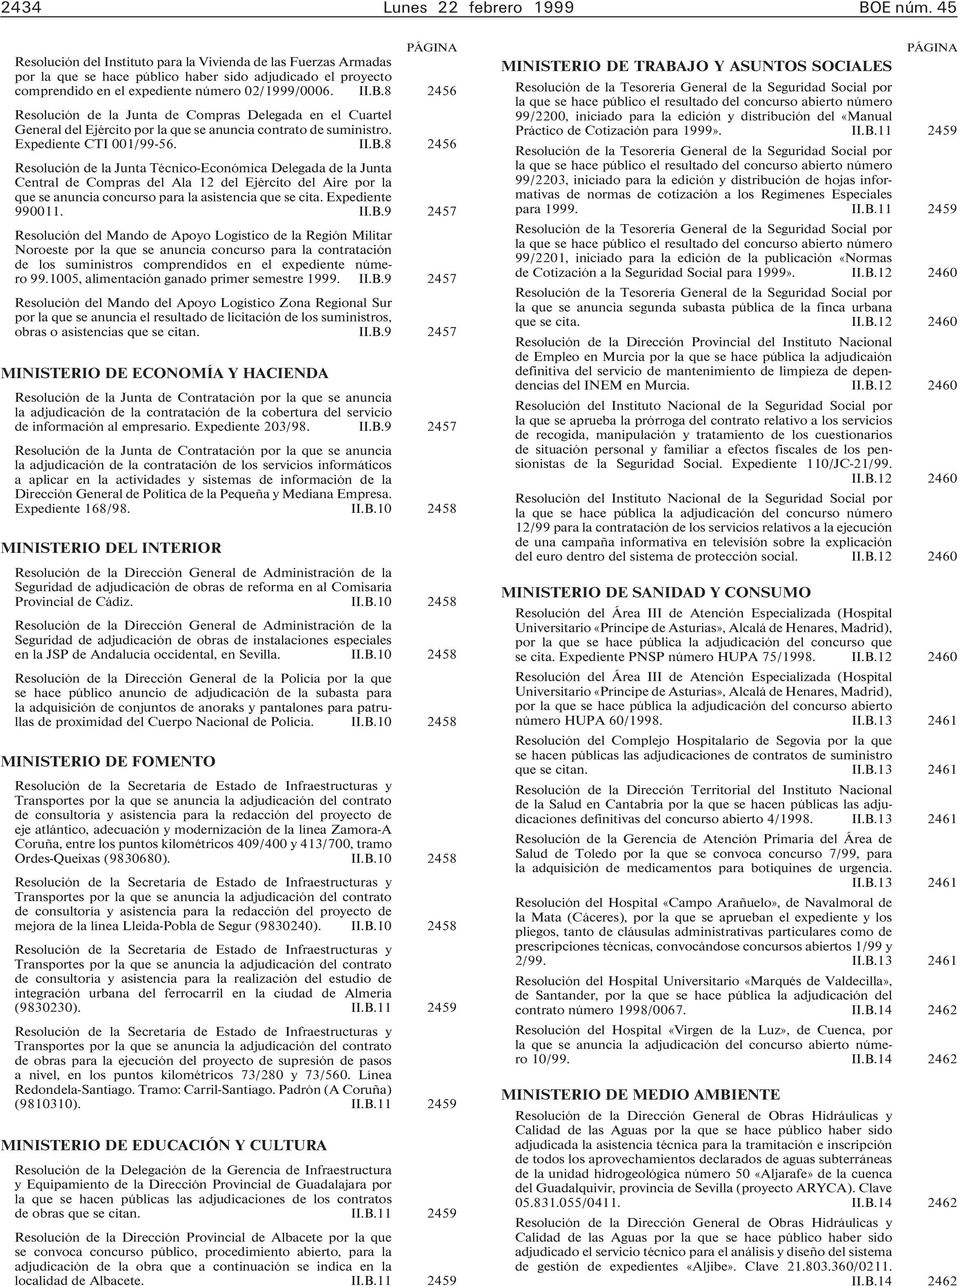 8 2456 Resolución de la Junta de Compras Delegada en el Cuartel General del Ejército por la que se anuncia contrato de suministro. Expediente CTI 001/99-56. II.B.